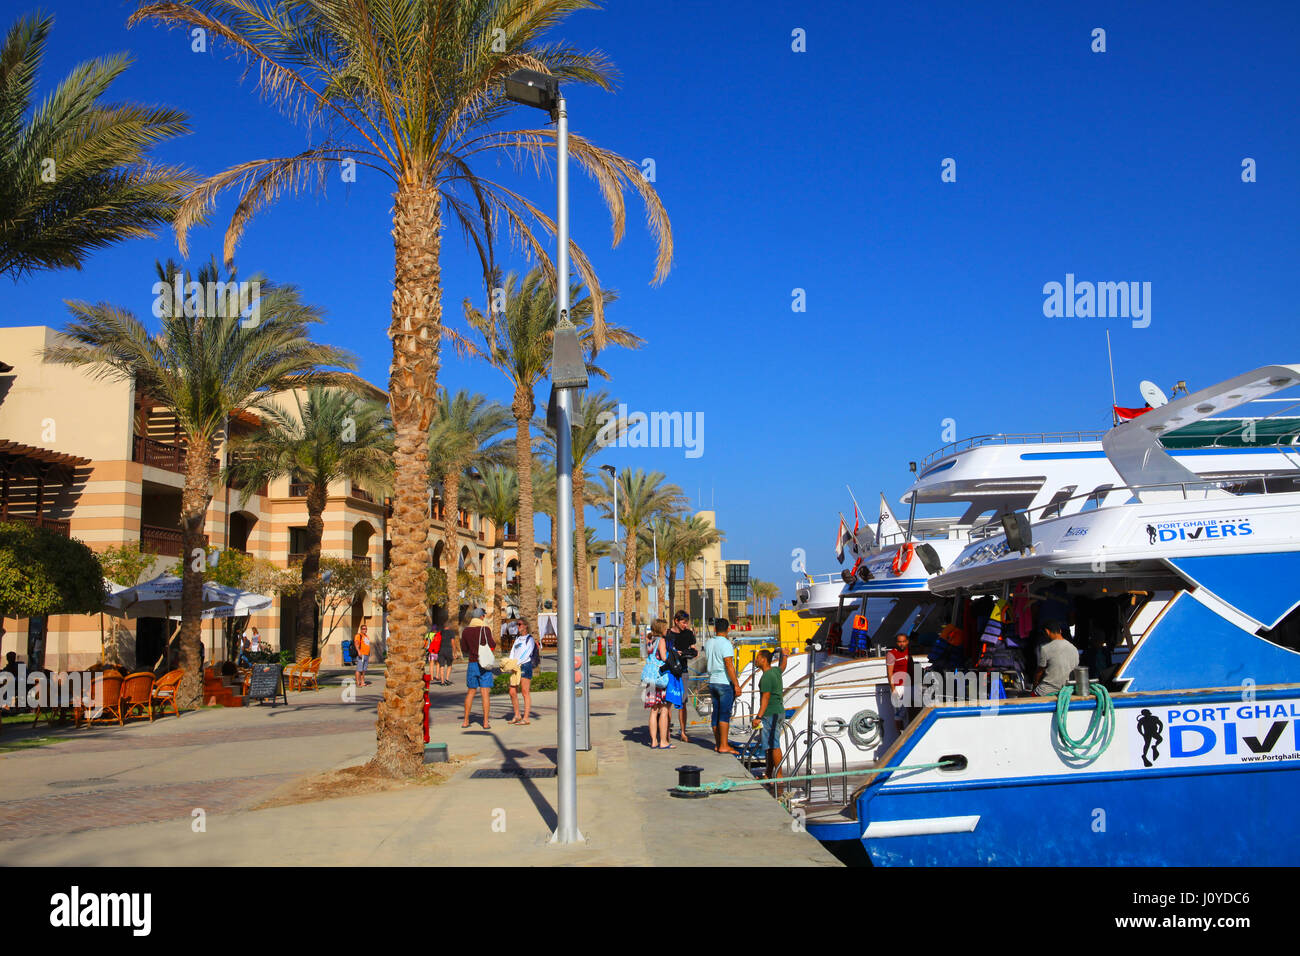 PORT GHALIB, Egitto - 02 Aprile 2017: Port Ghalib, un bellissimo porto e marina e città turistica vicino a Marsa Alam, Egitto Foto Stock